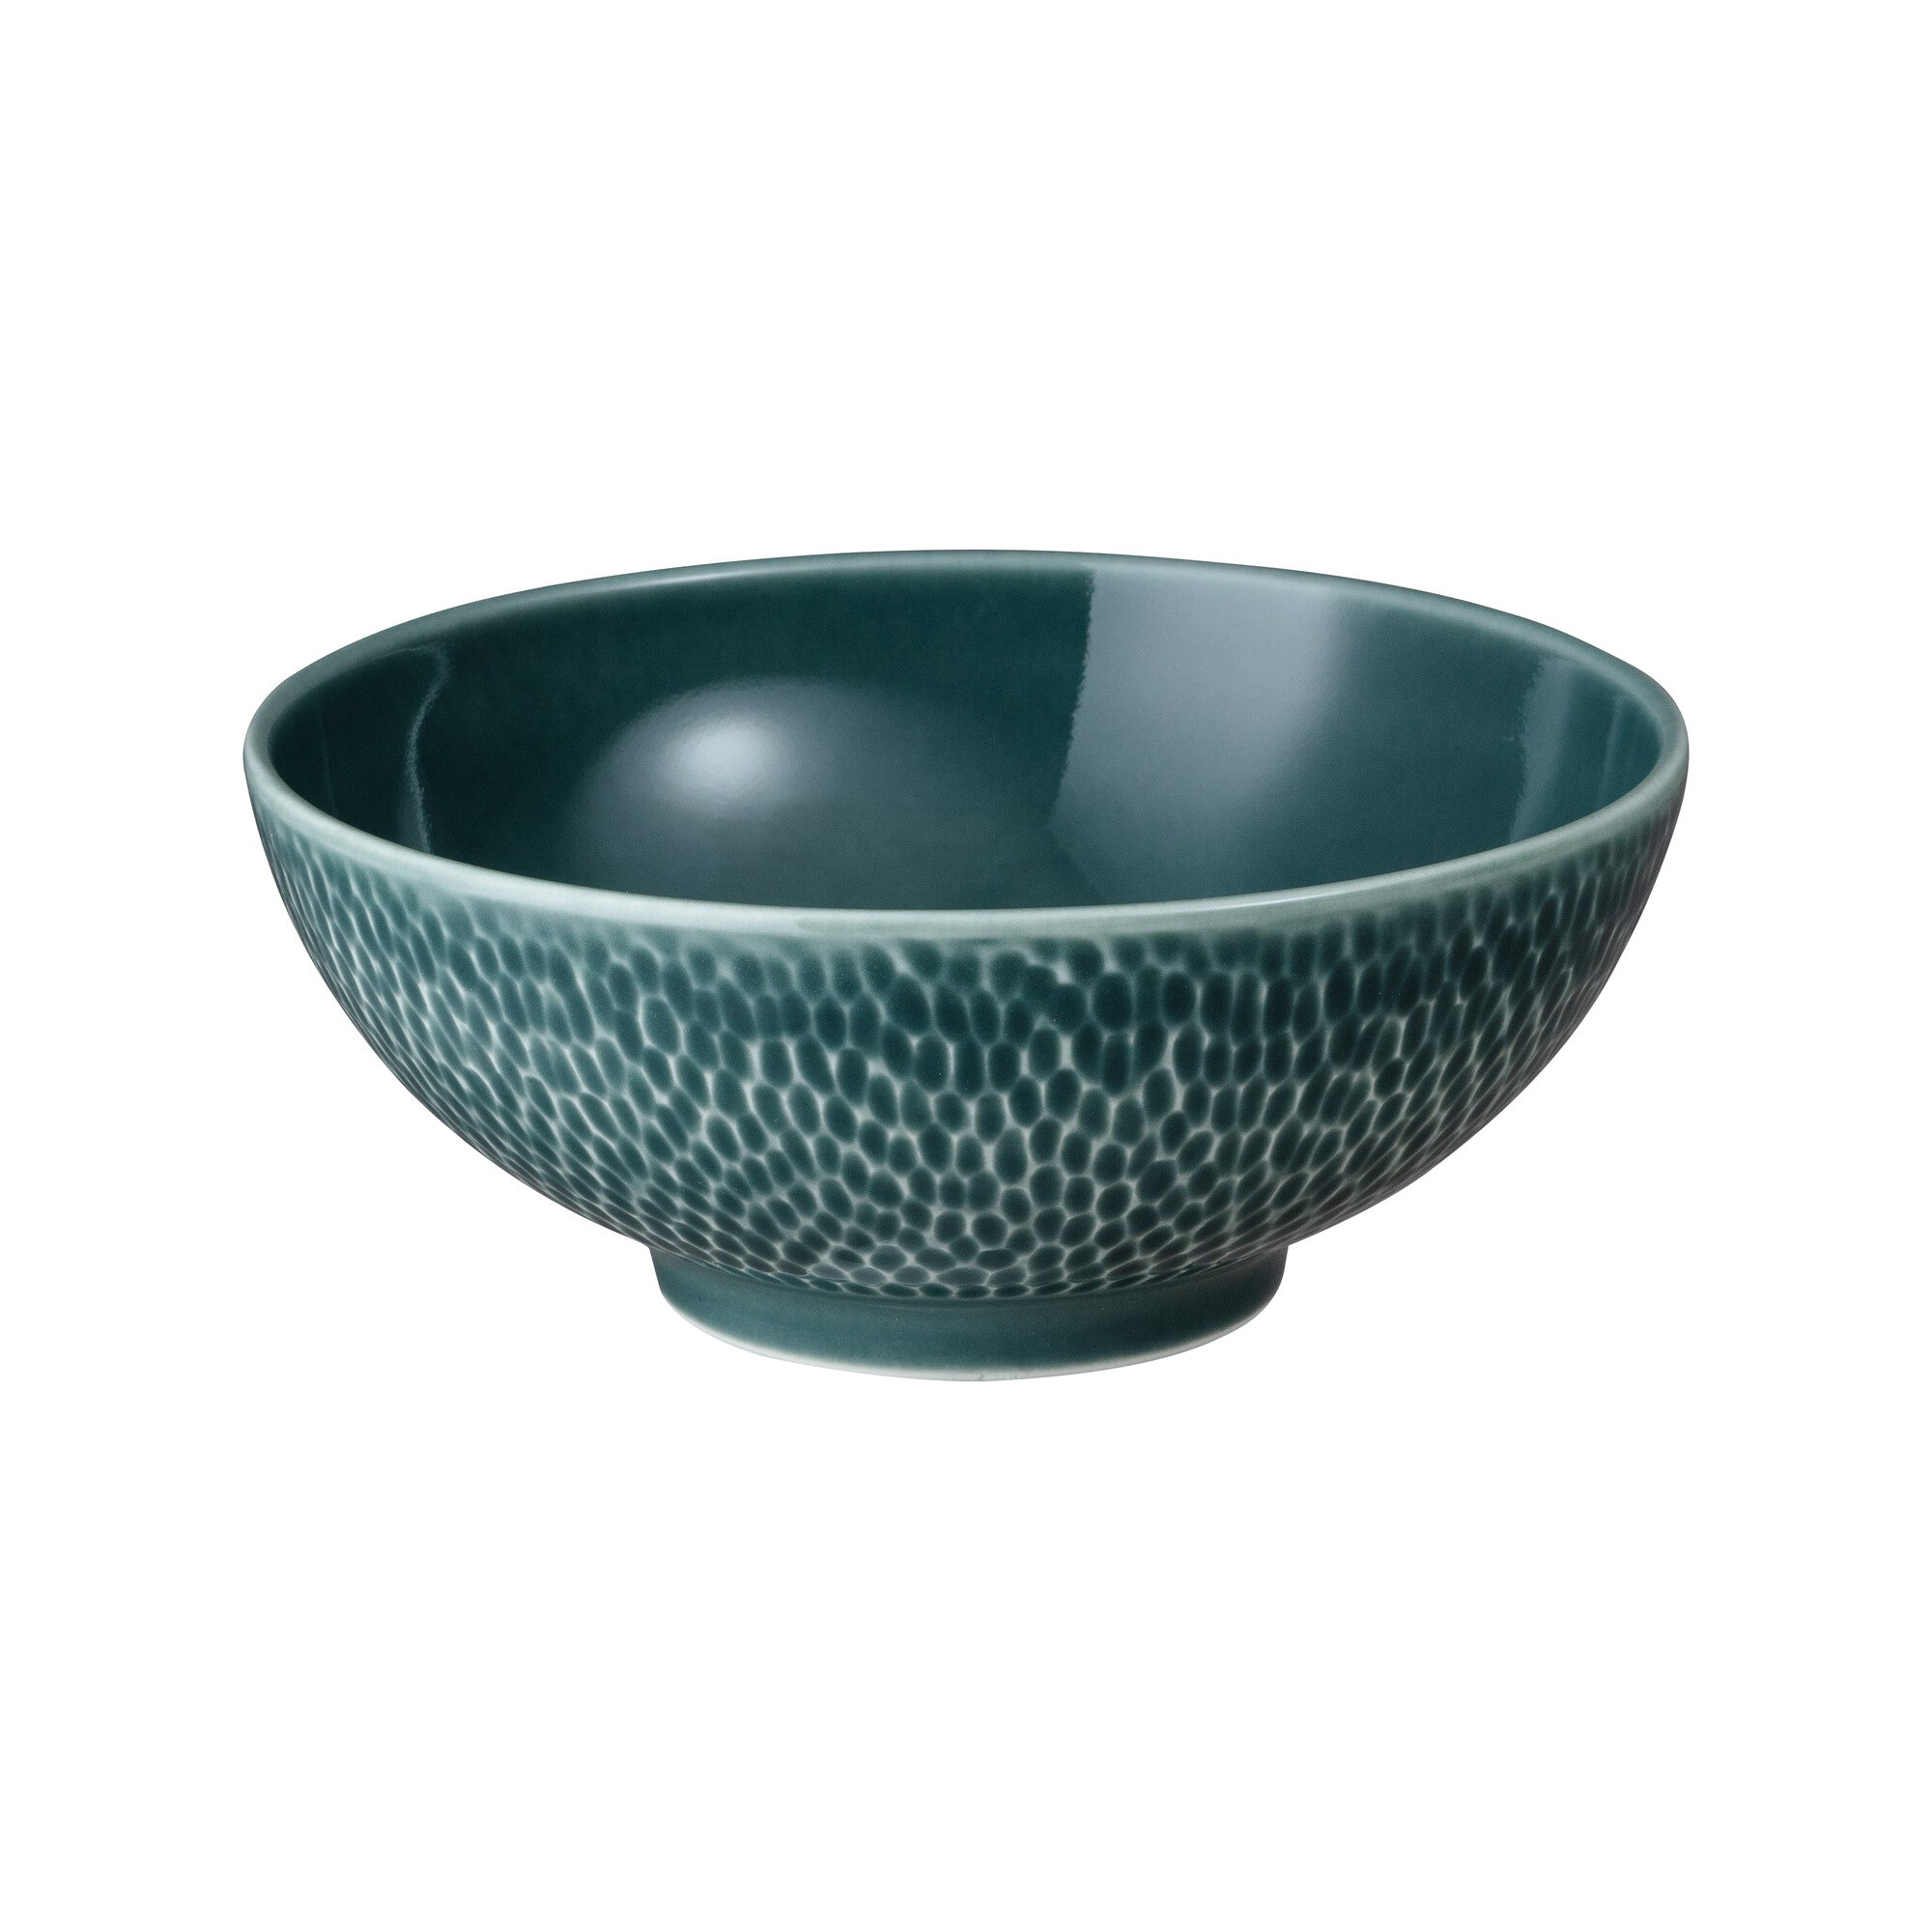 Denby Carve Green Porcelain Cereal Bowl